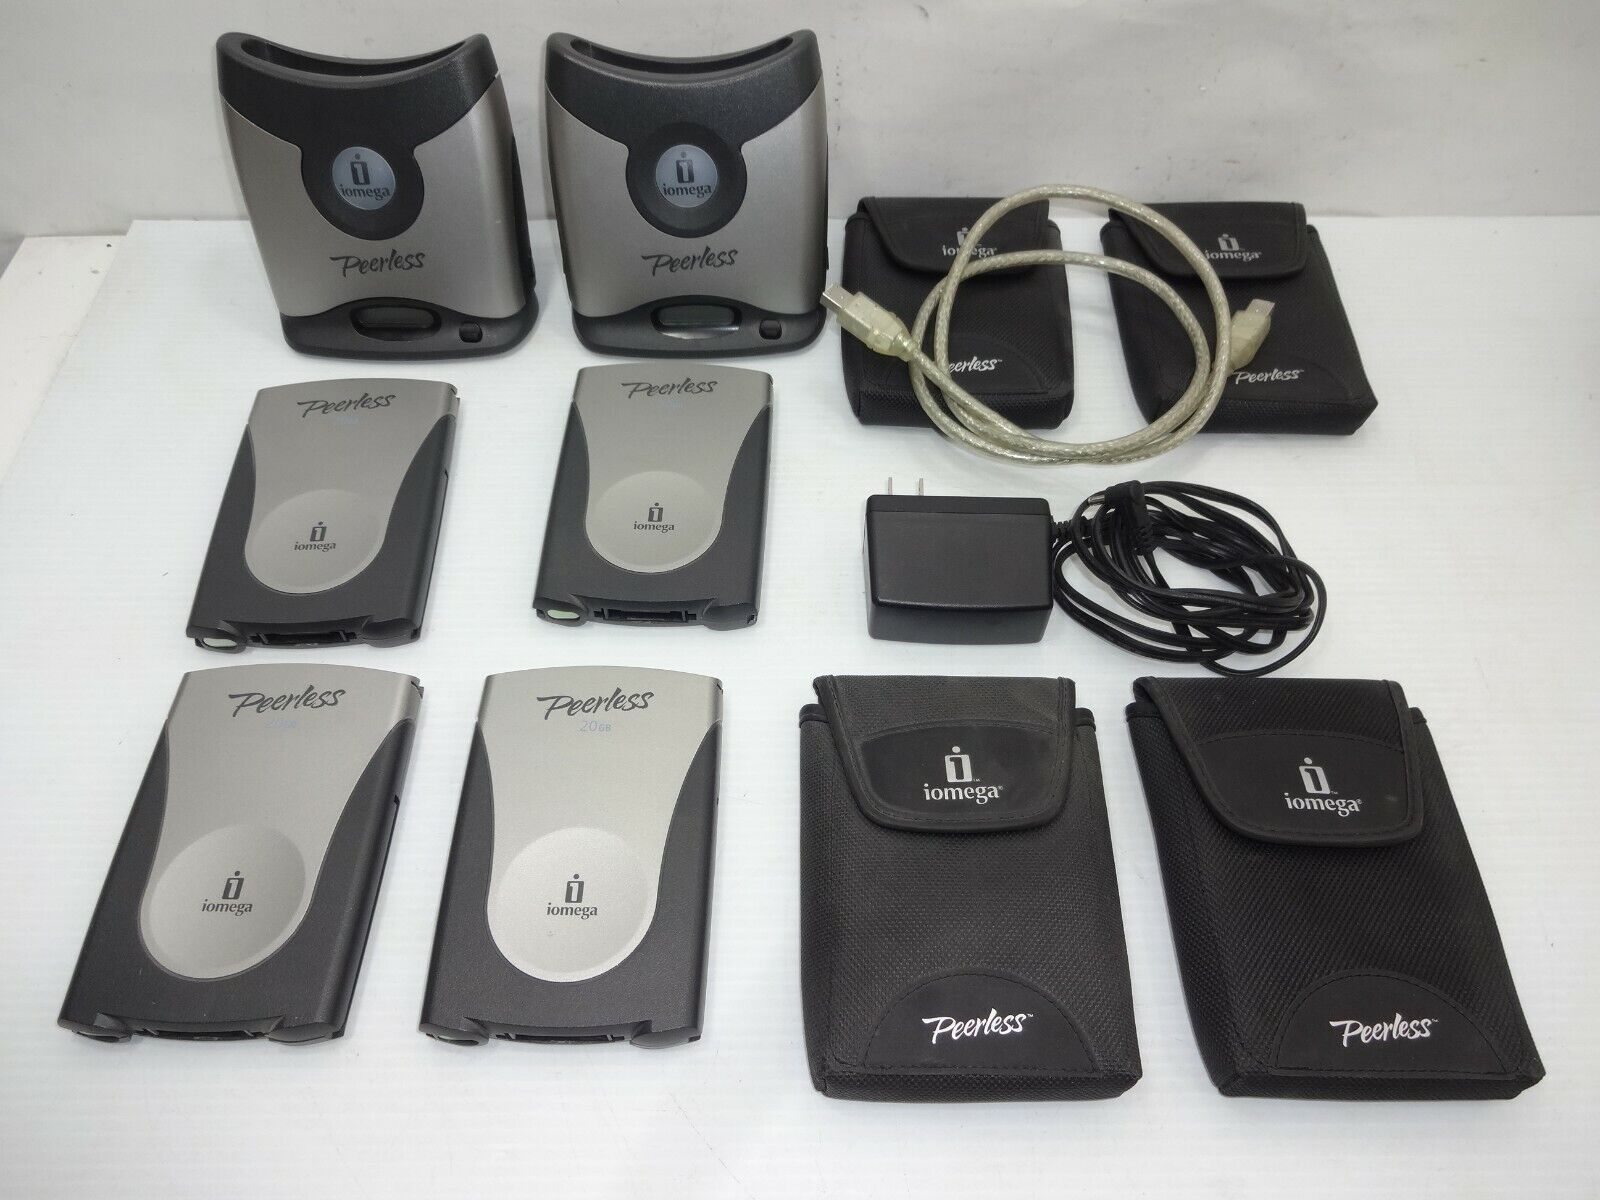 Iomega Peerless 20GB Portable Base Stations & Disks